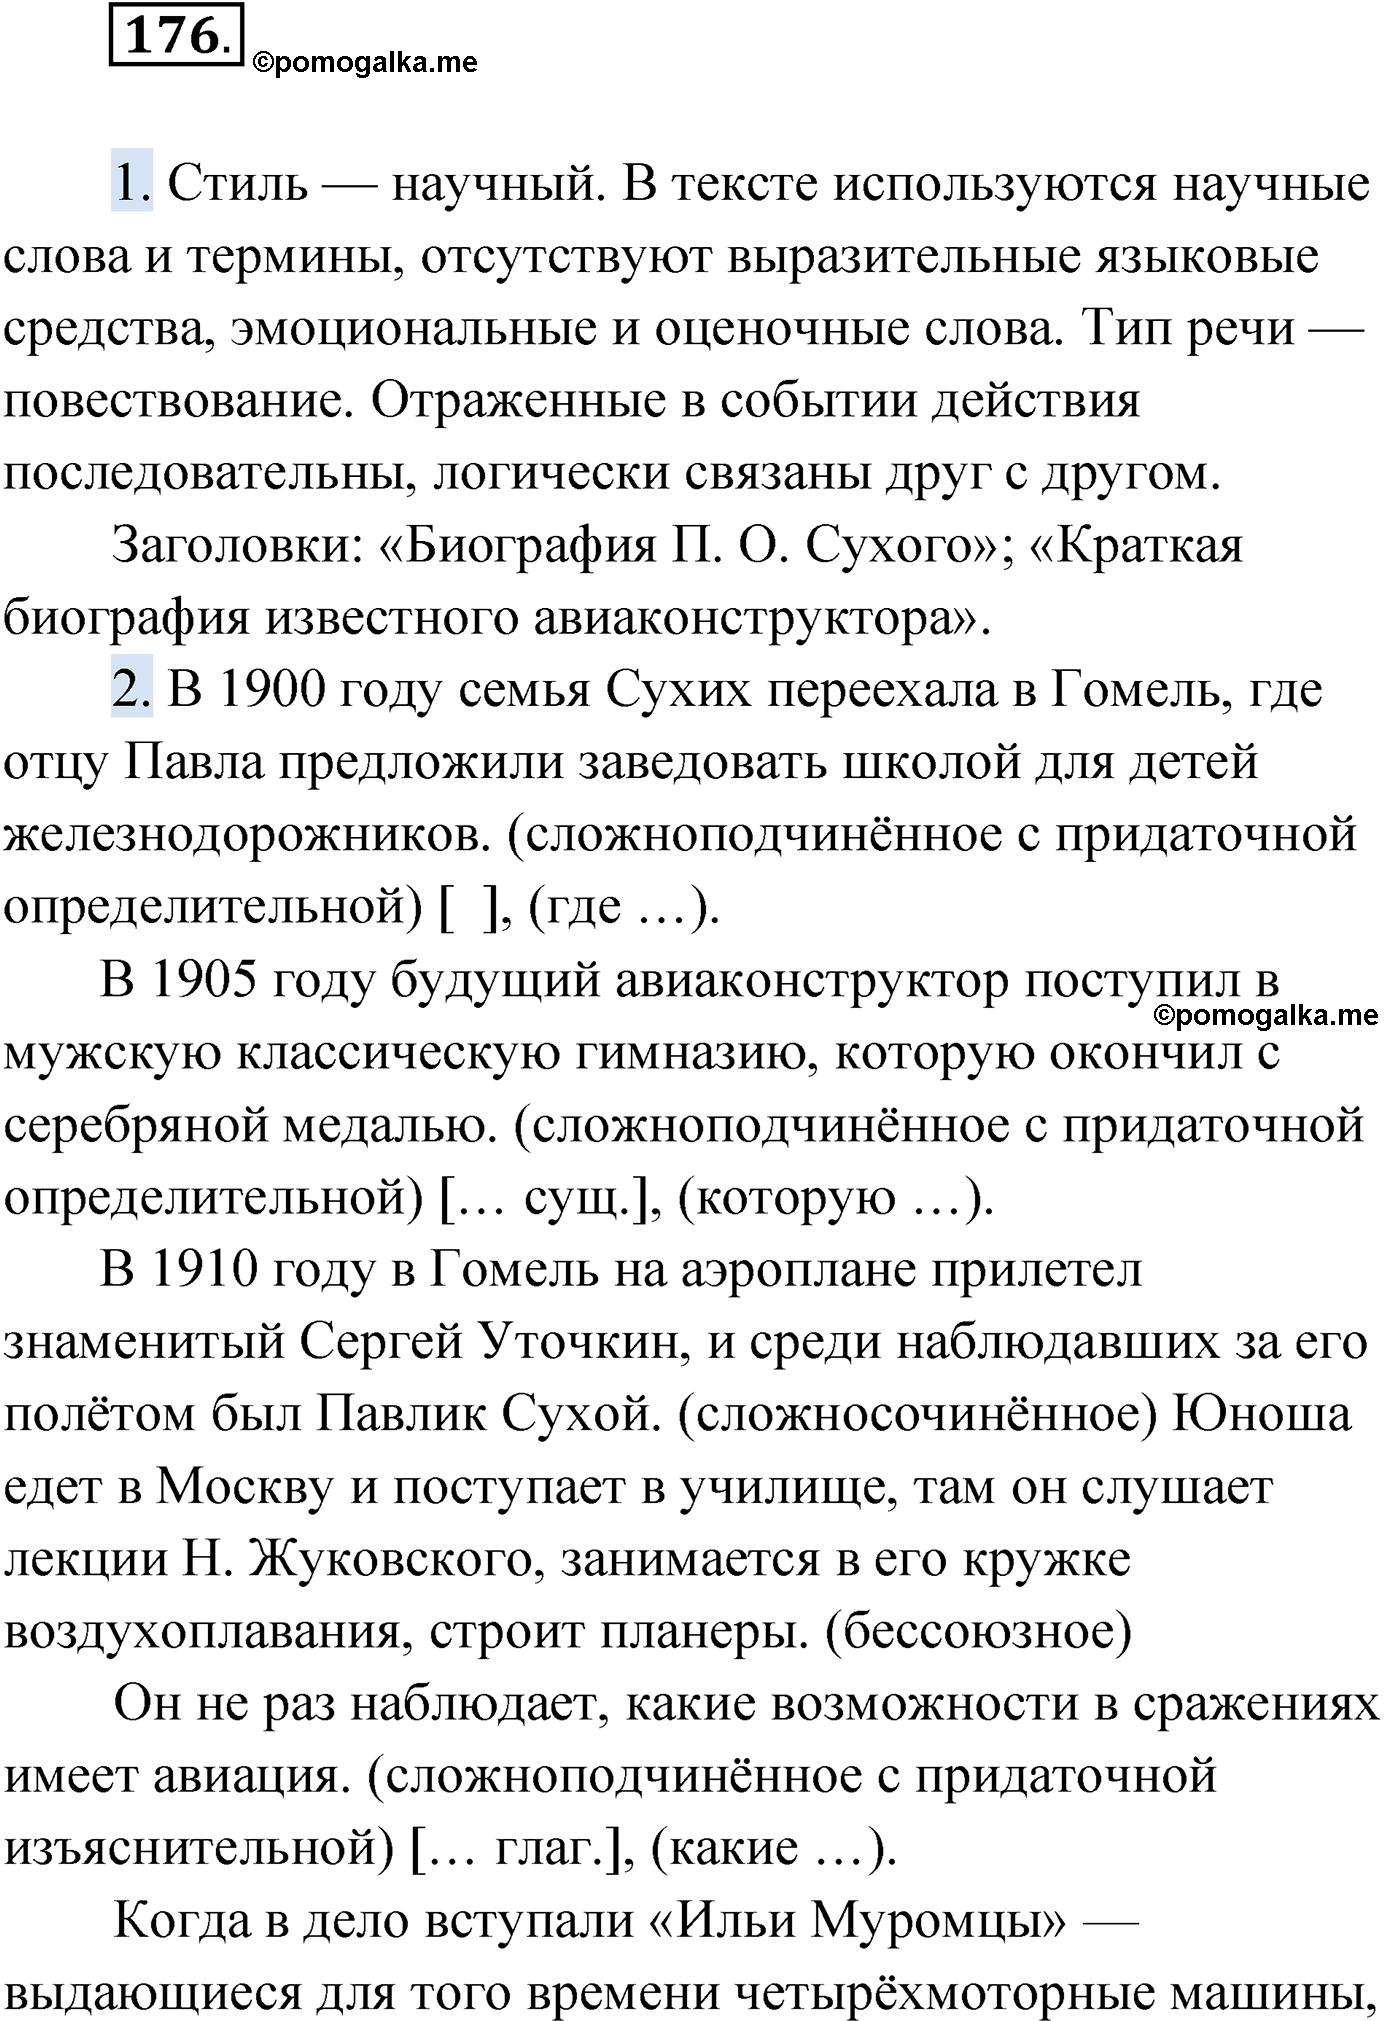 упражнение №176 русский язык 9 класс Мурина 2019 год